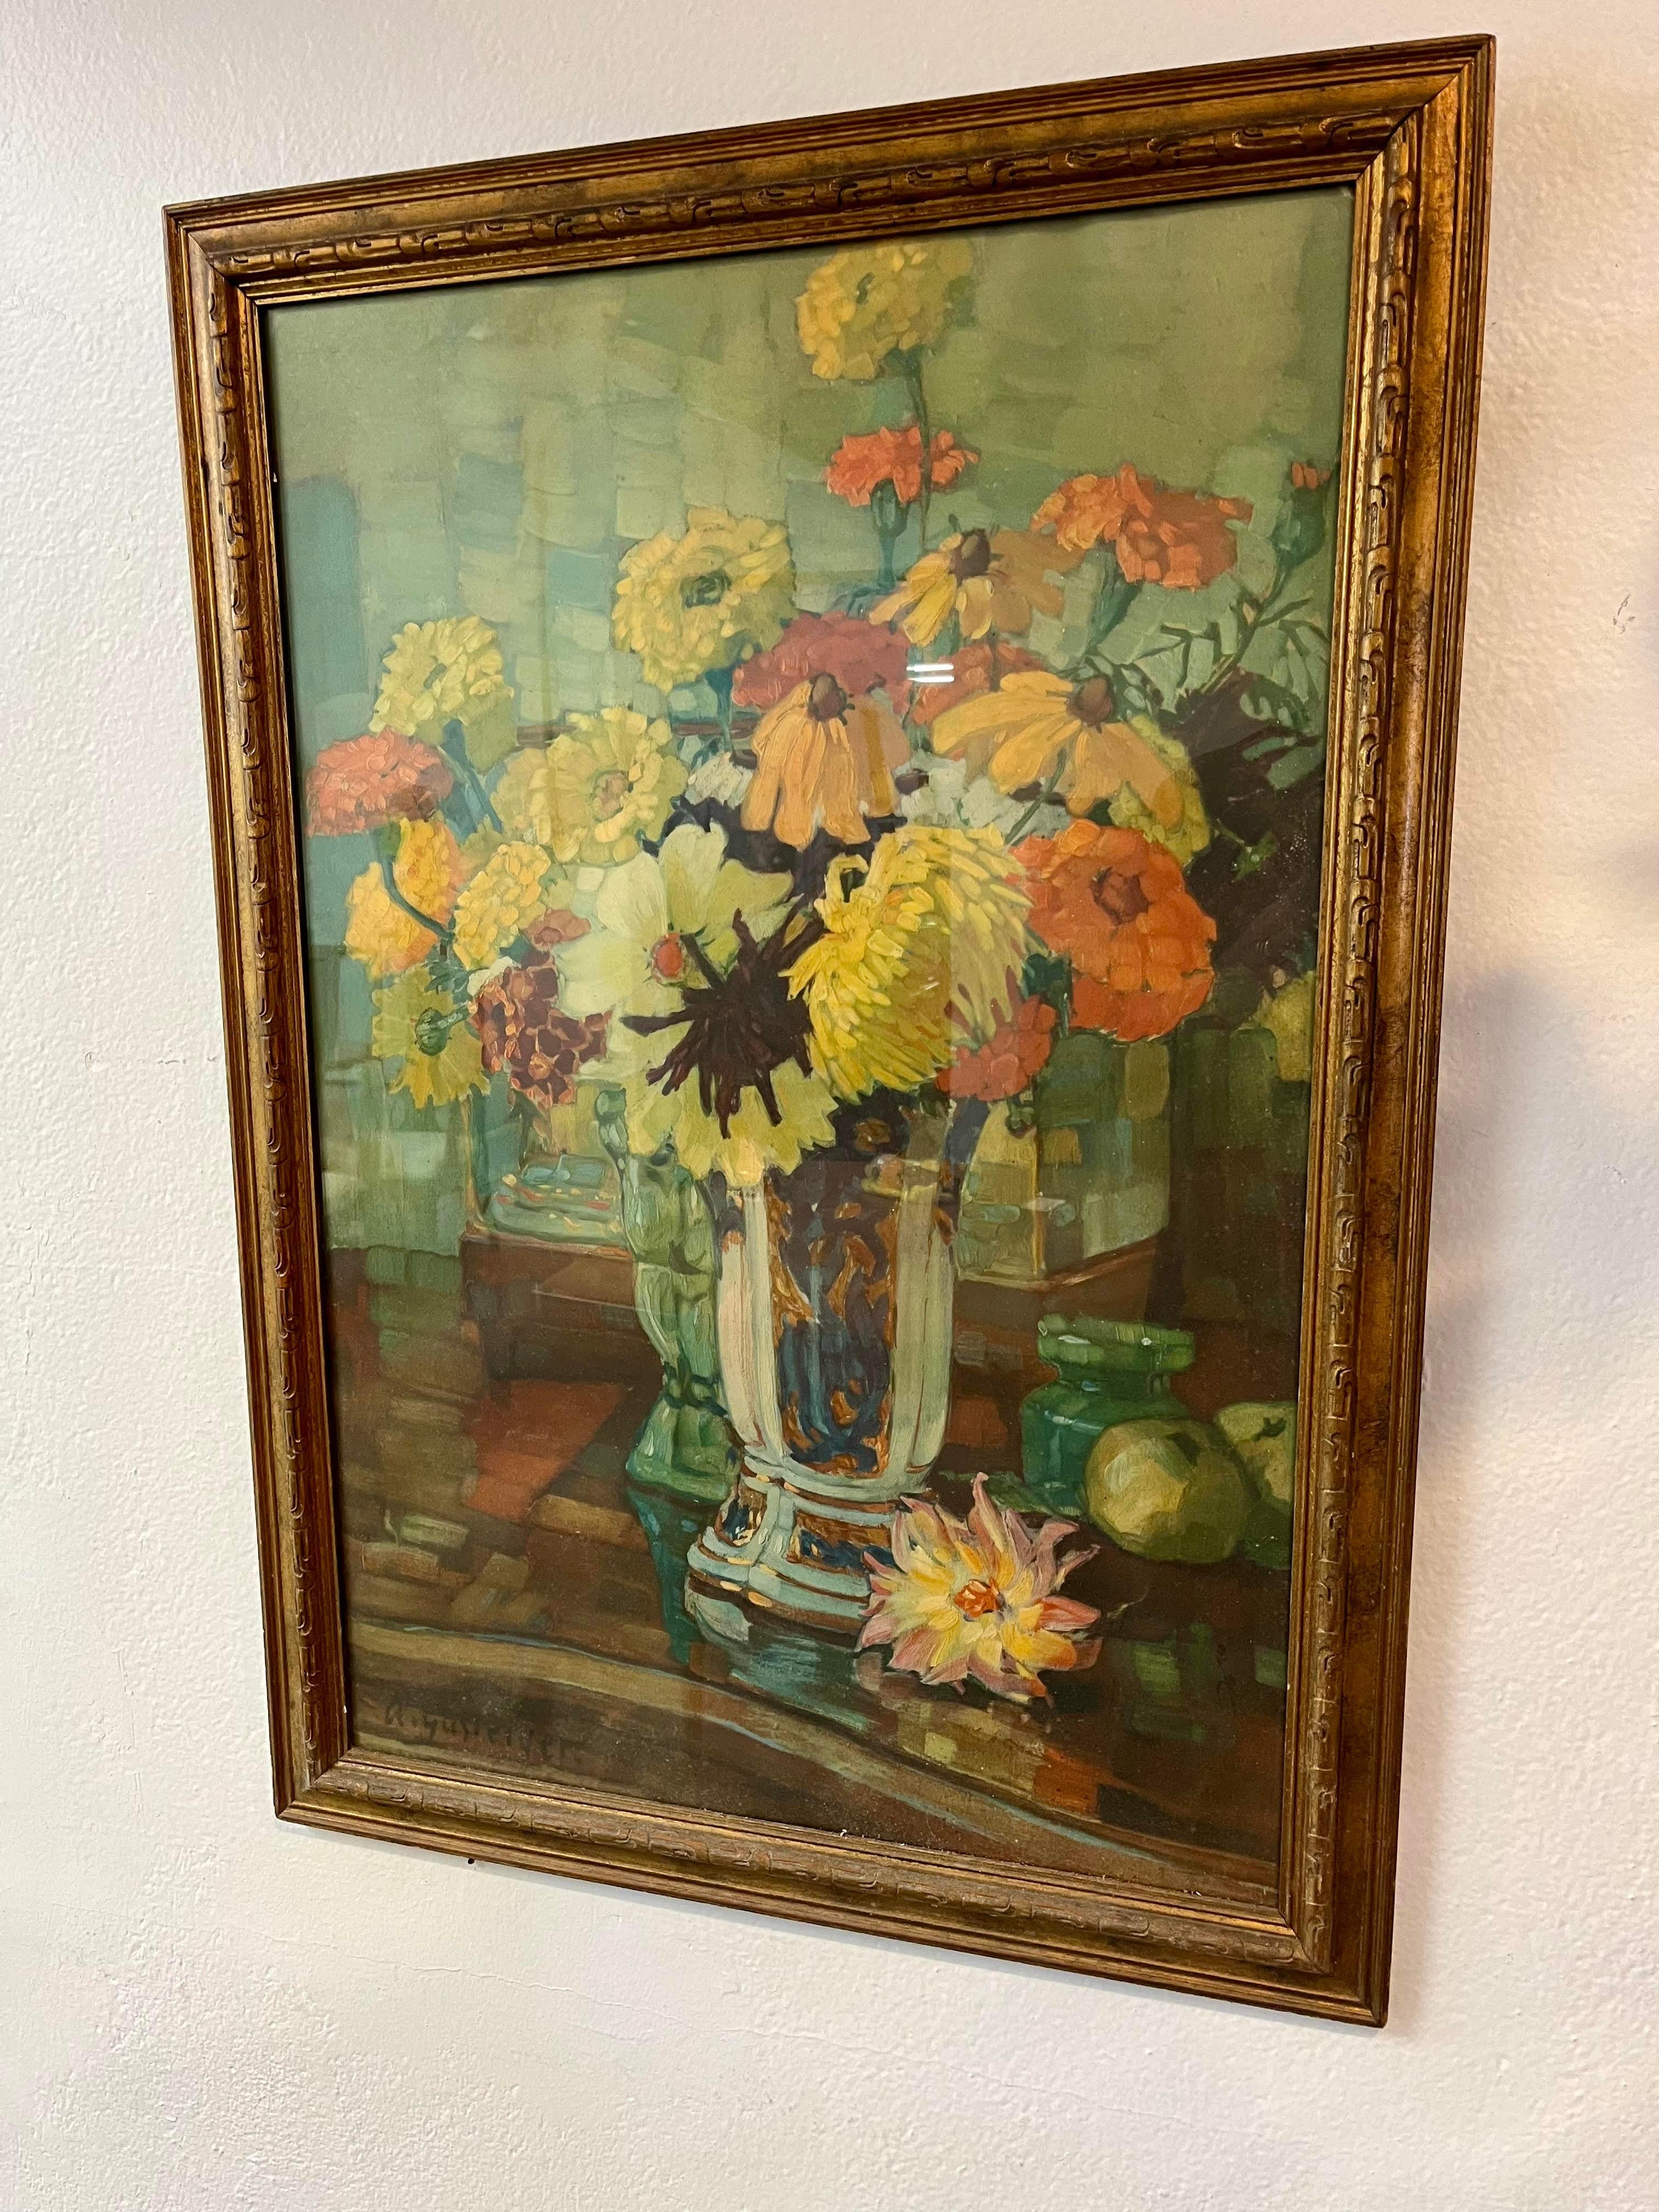 Belle Anna Gasteiger (1877-1954) 
Dahlias jaunes dans un vase bleu. 
Signé à la main en bas à gauche.
